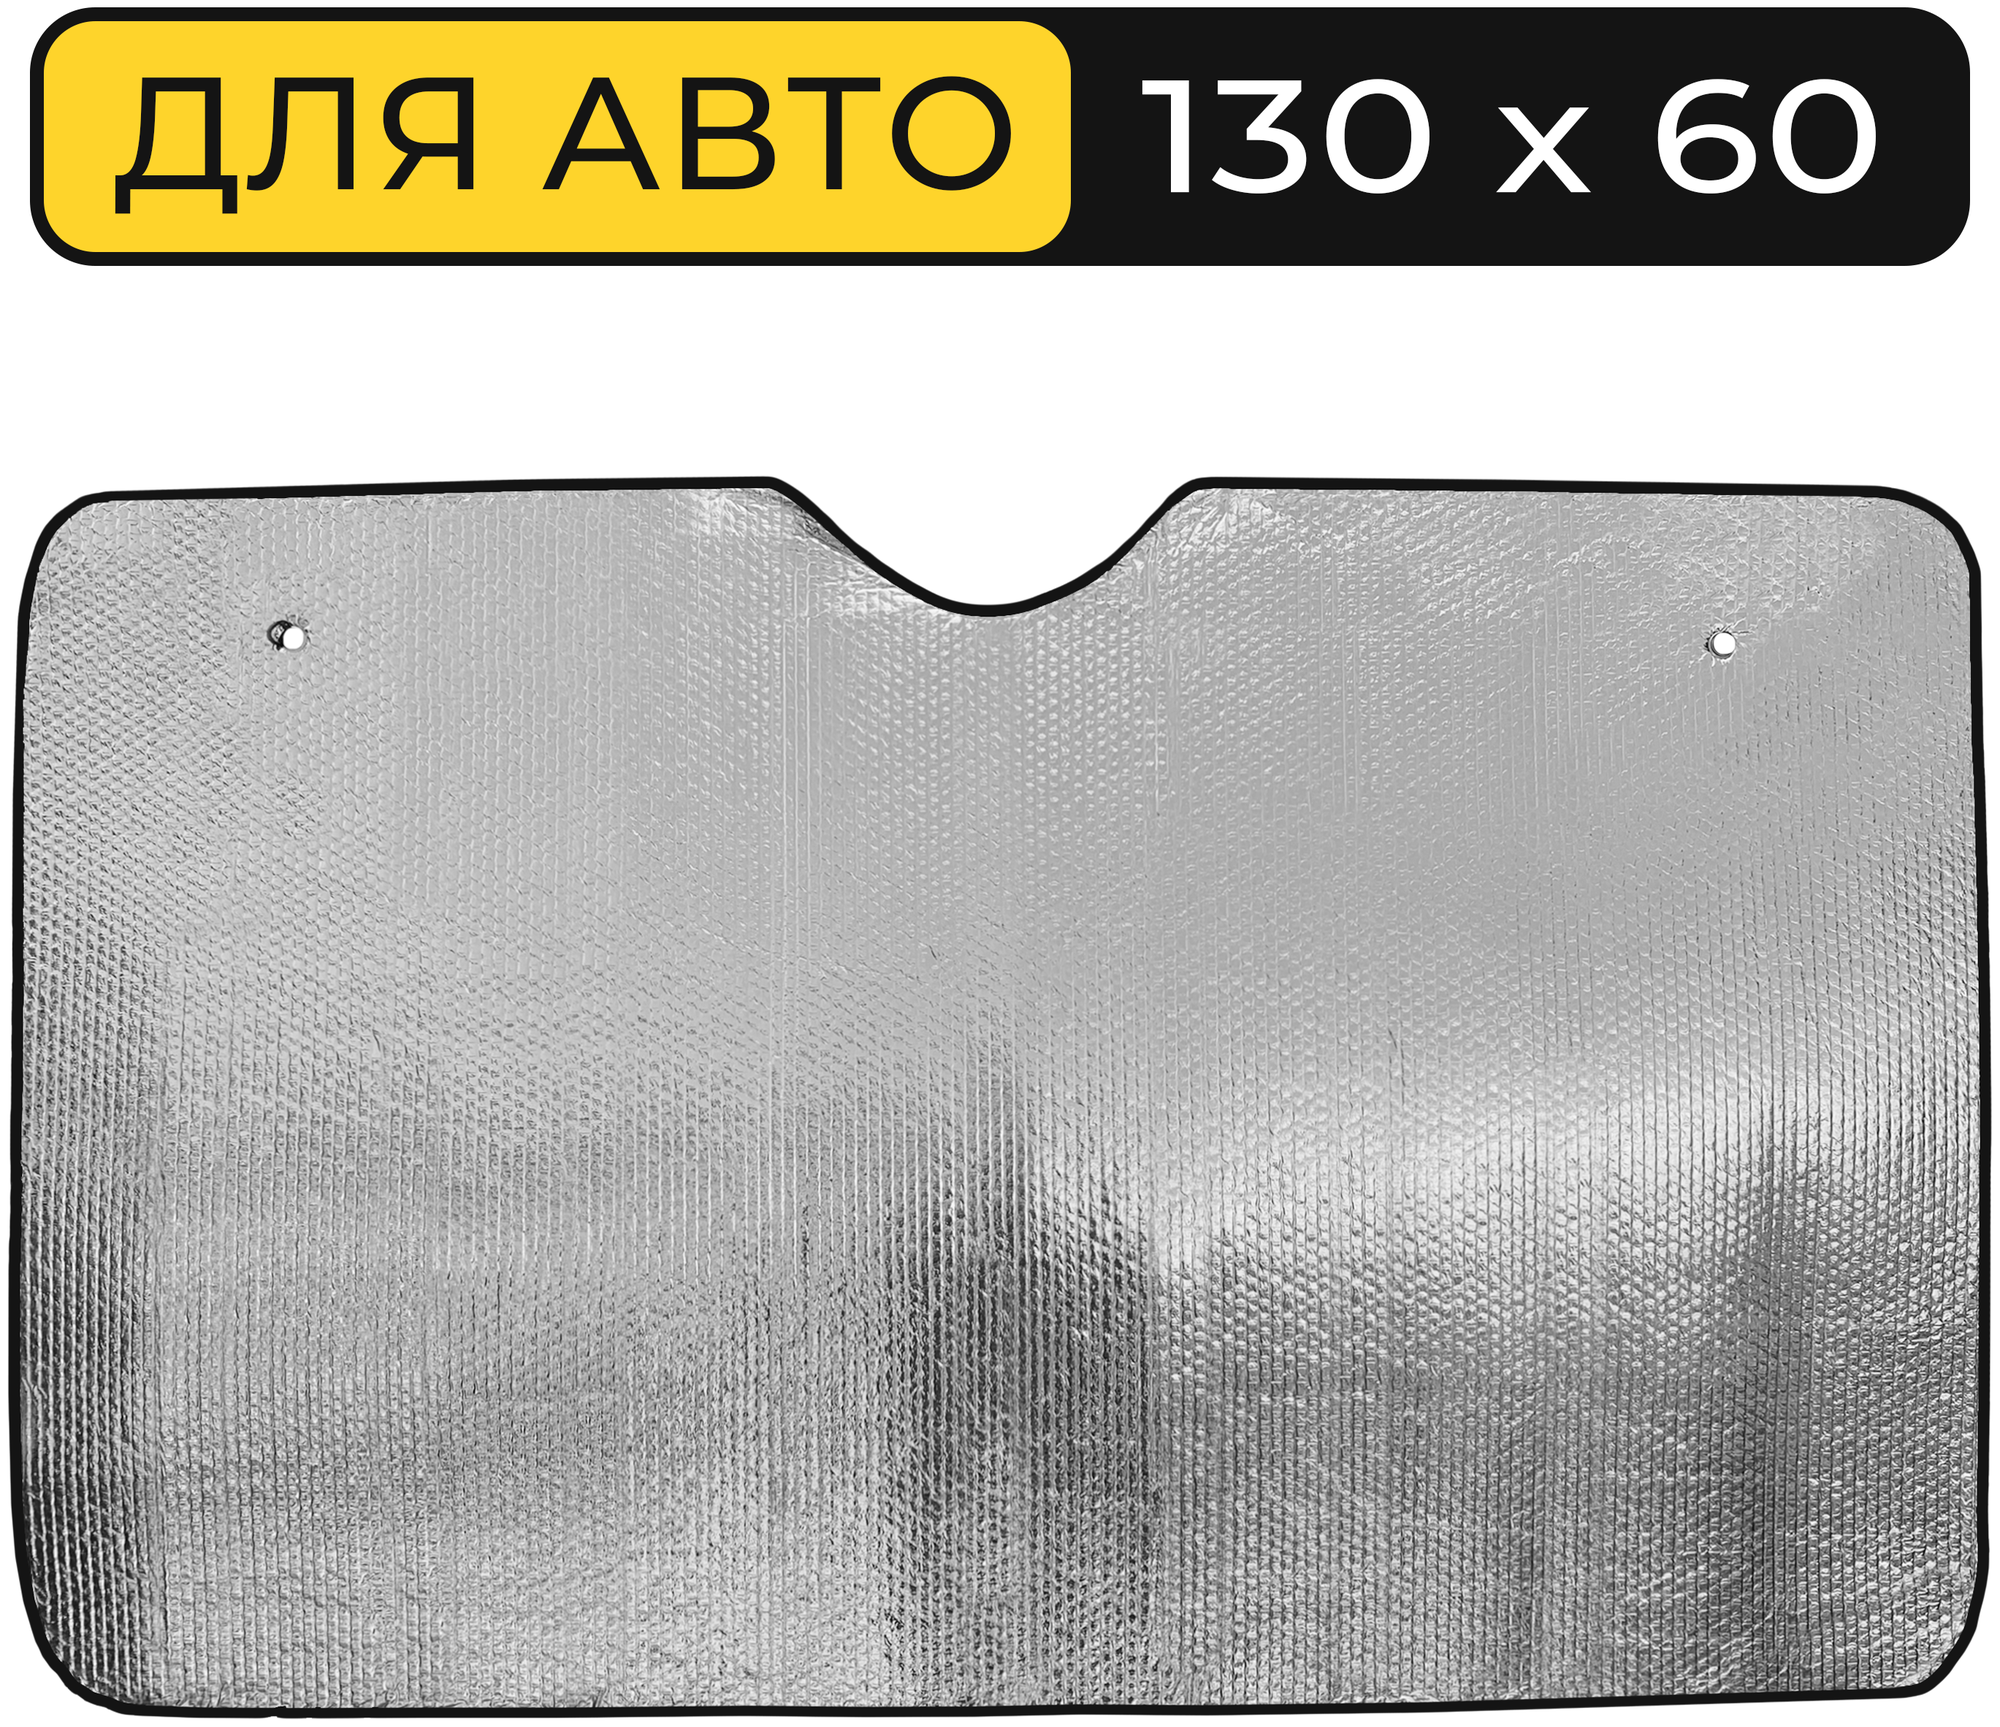 Шторка солнцезащитная на лобовое стекло Автостор LW-2100 (130х60 см) фольга серебристая